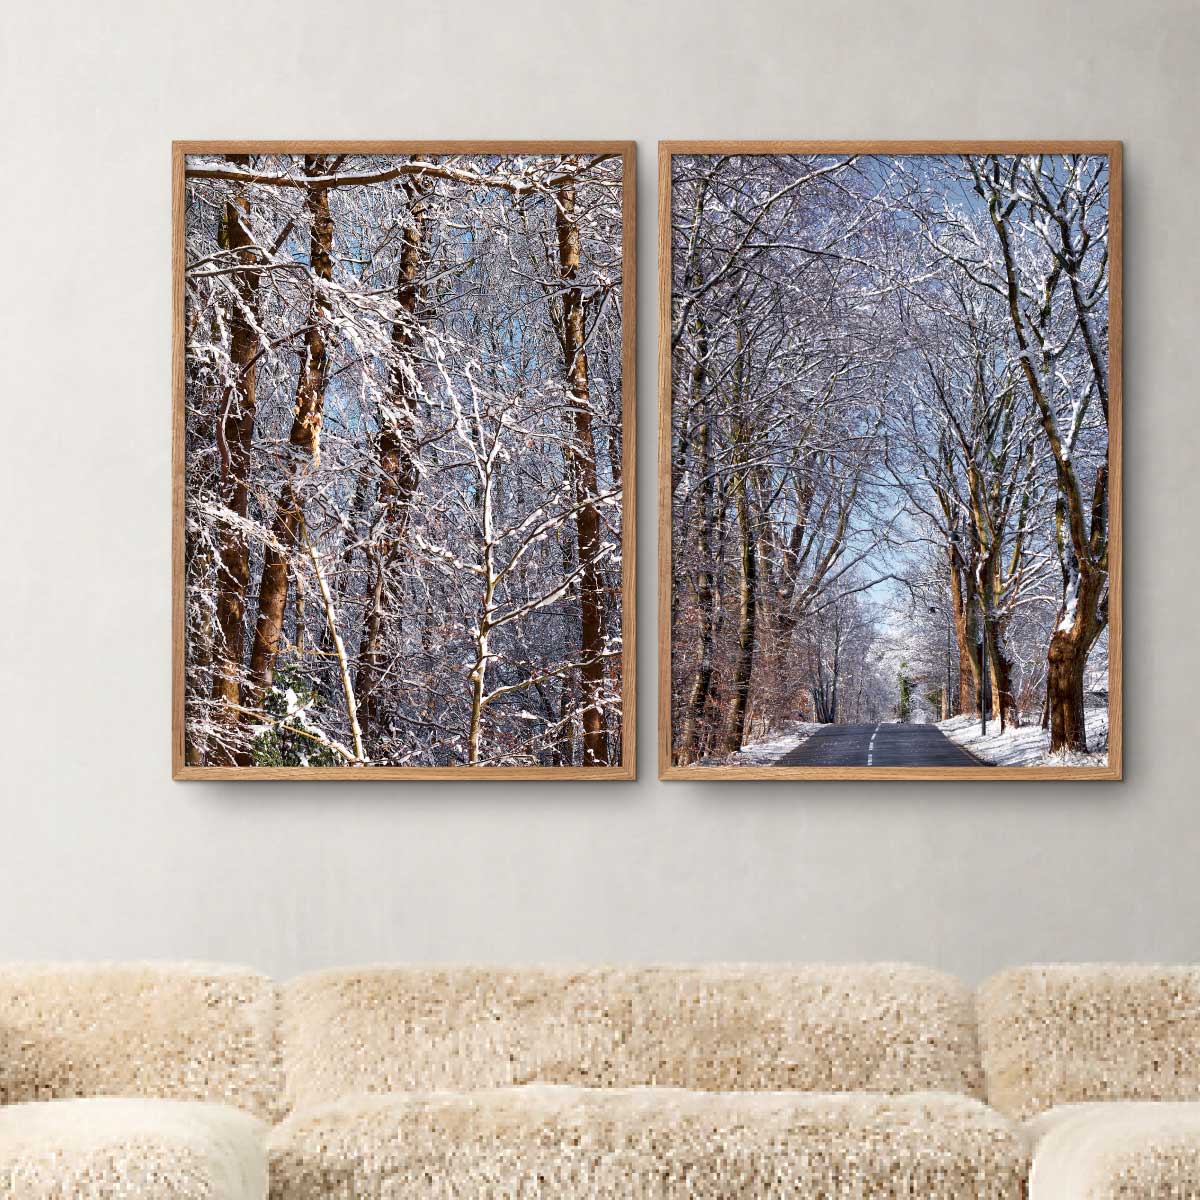 to billeder på en væg med snedækkede træer